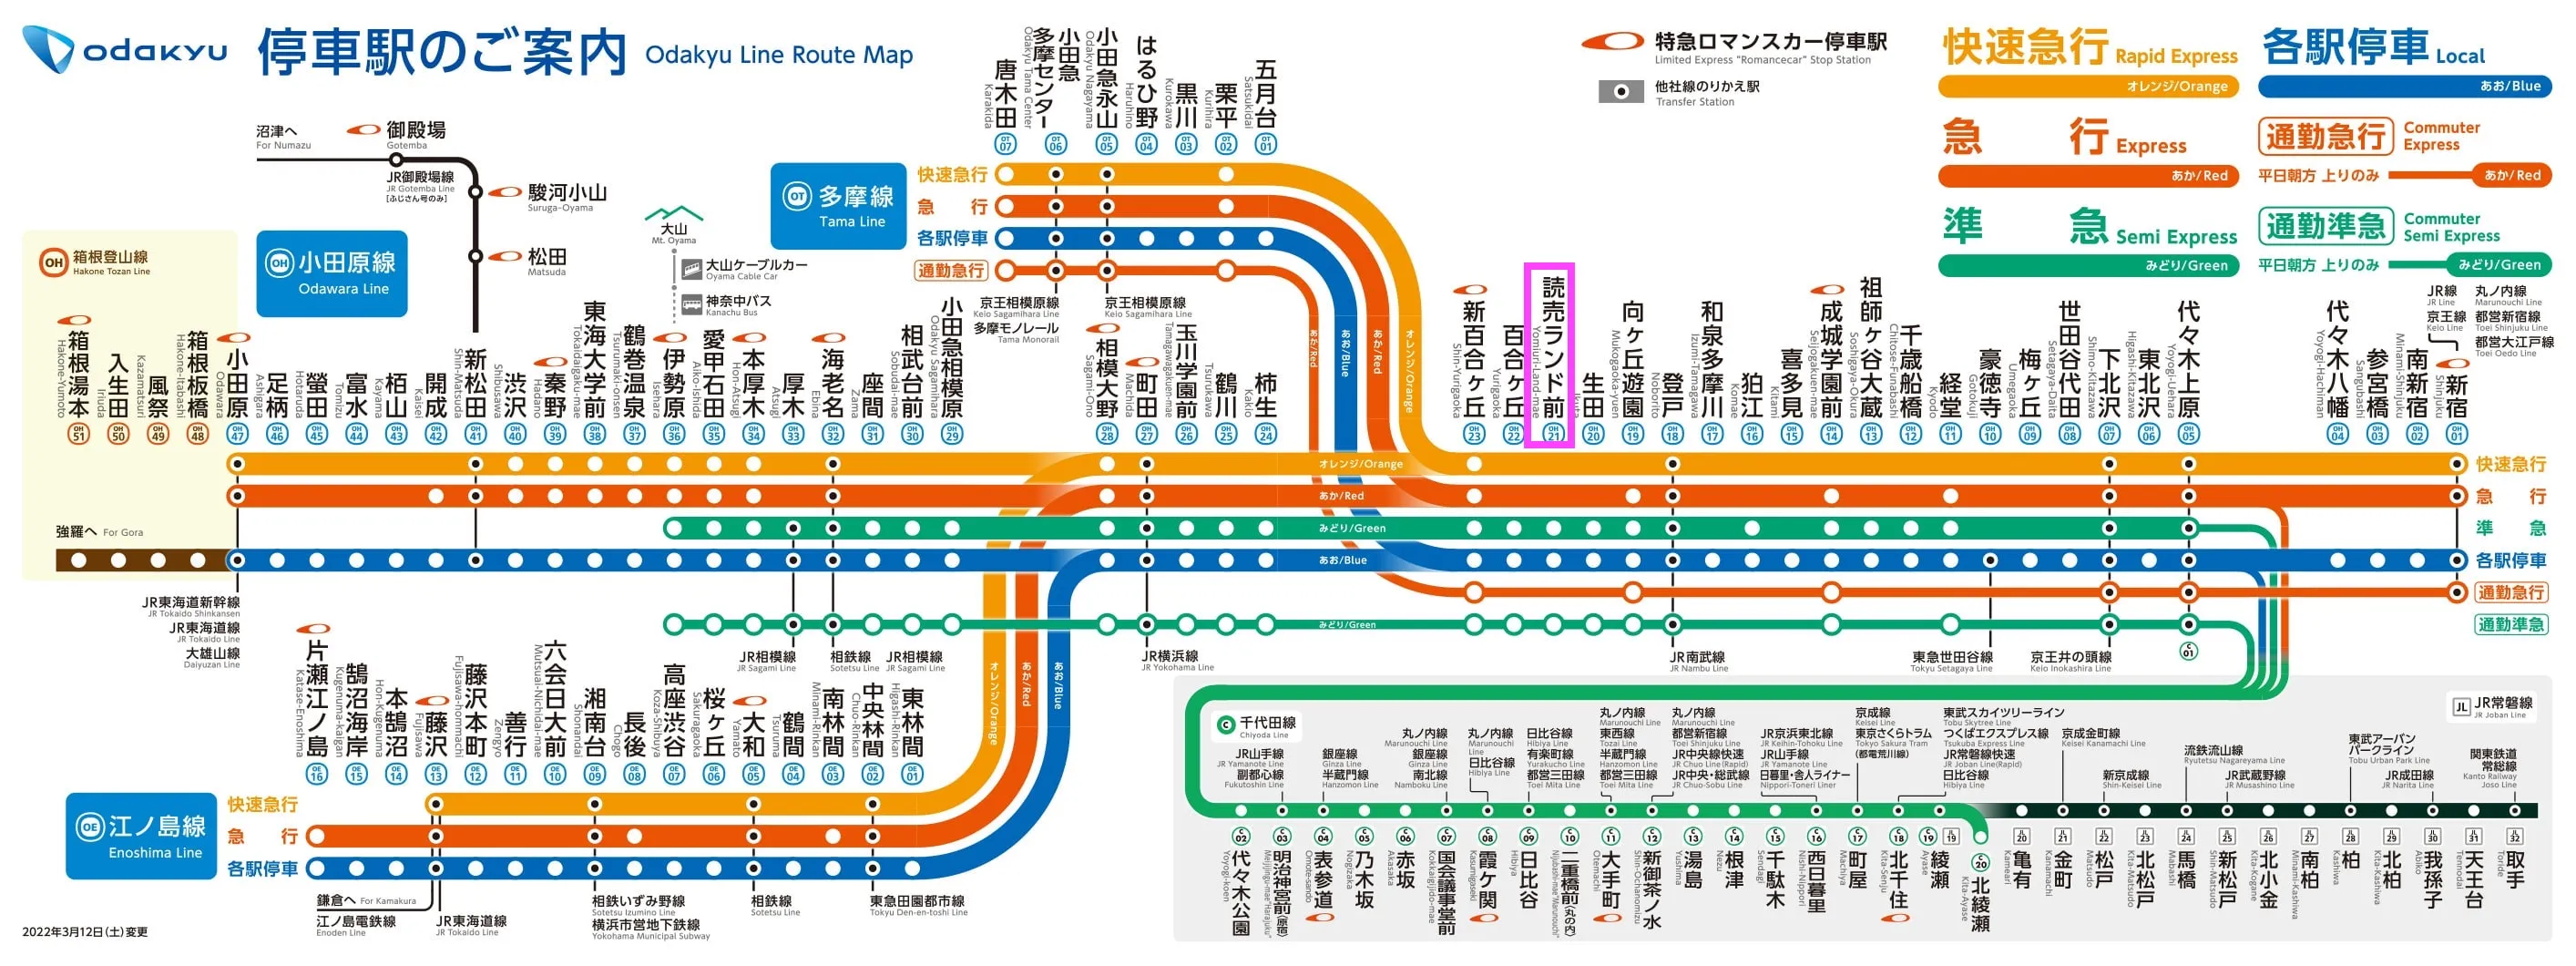 แผนที่เส้นทางสาย Odakyu Odawara